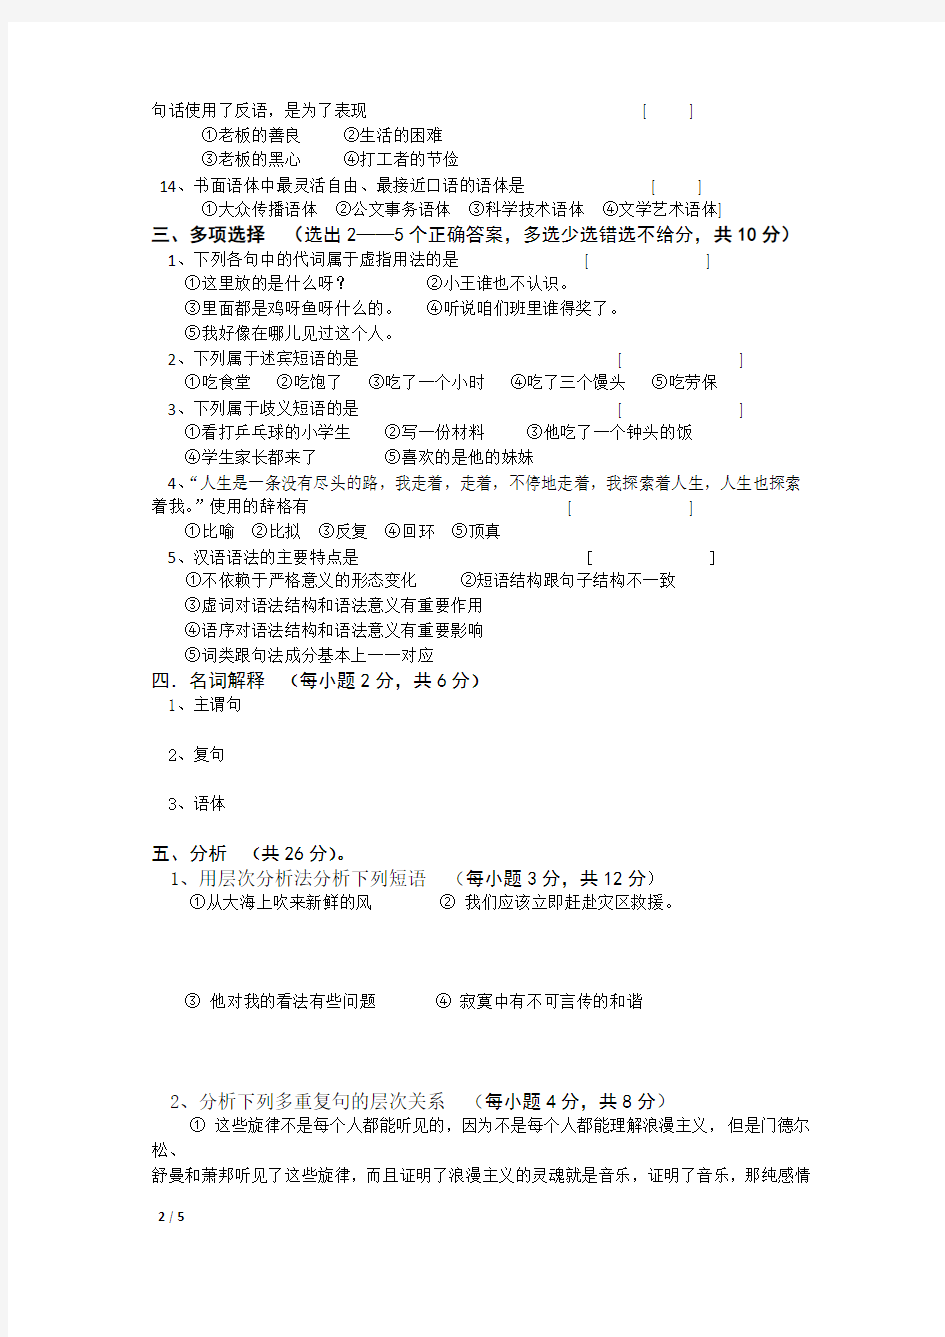 2019年春河北师范大学现代汉语考试题考试卷及答案解析(二)【最新版】